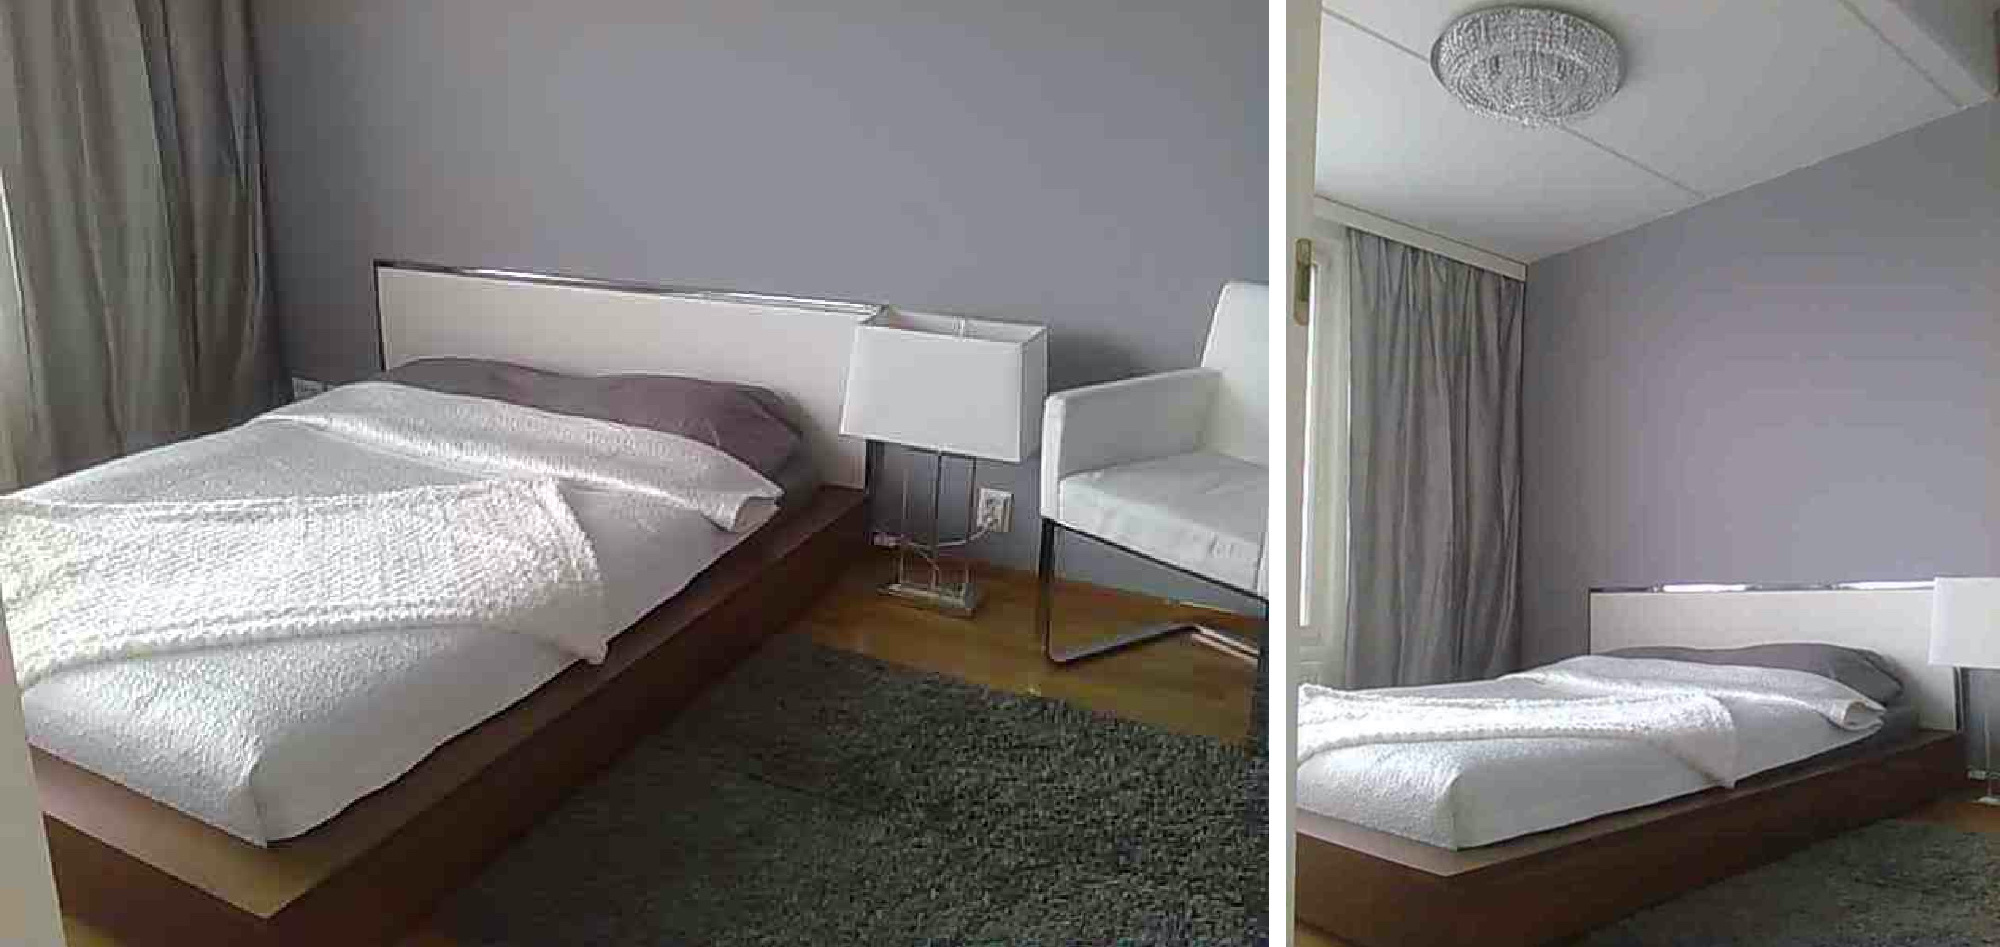 Makuuhuone ennen ja jälkeen muutos Omakotivalkoinen sisustusblogi